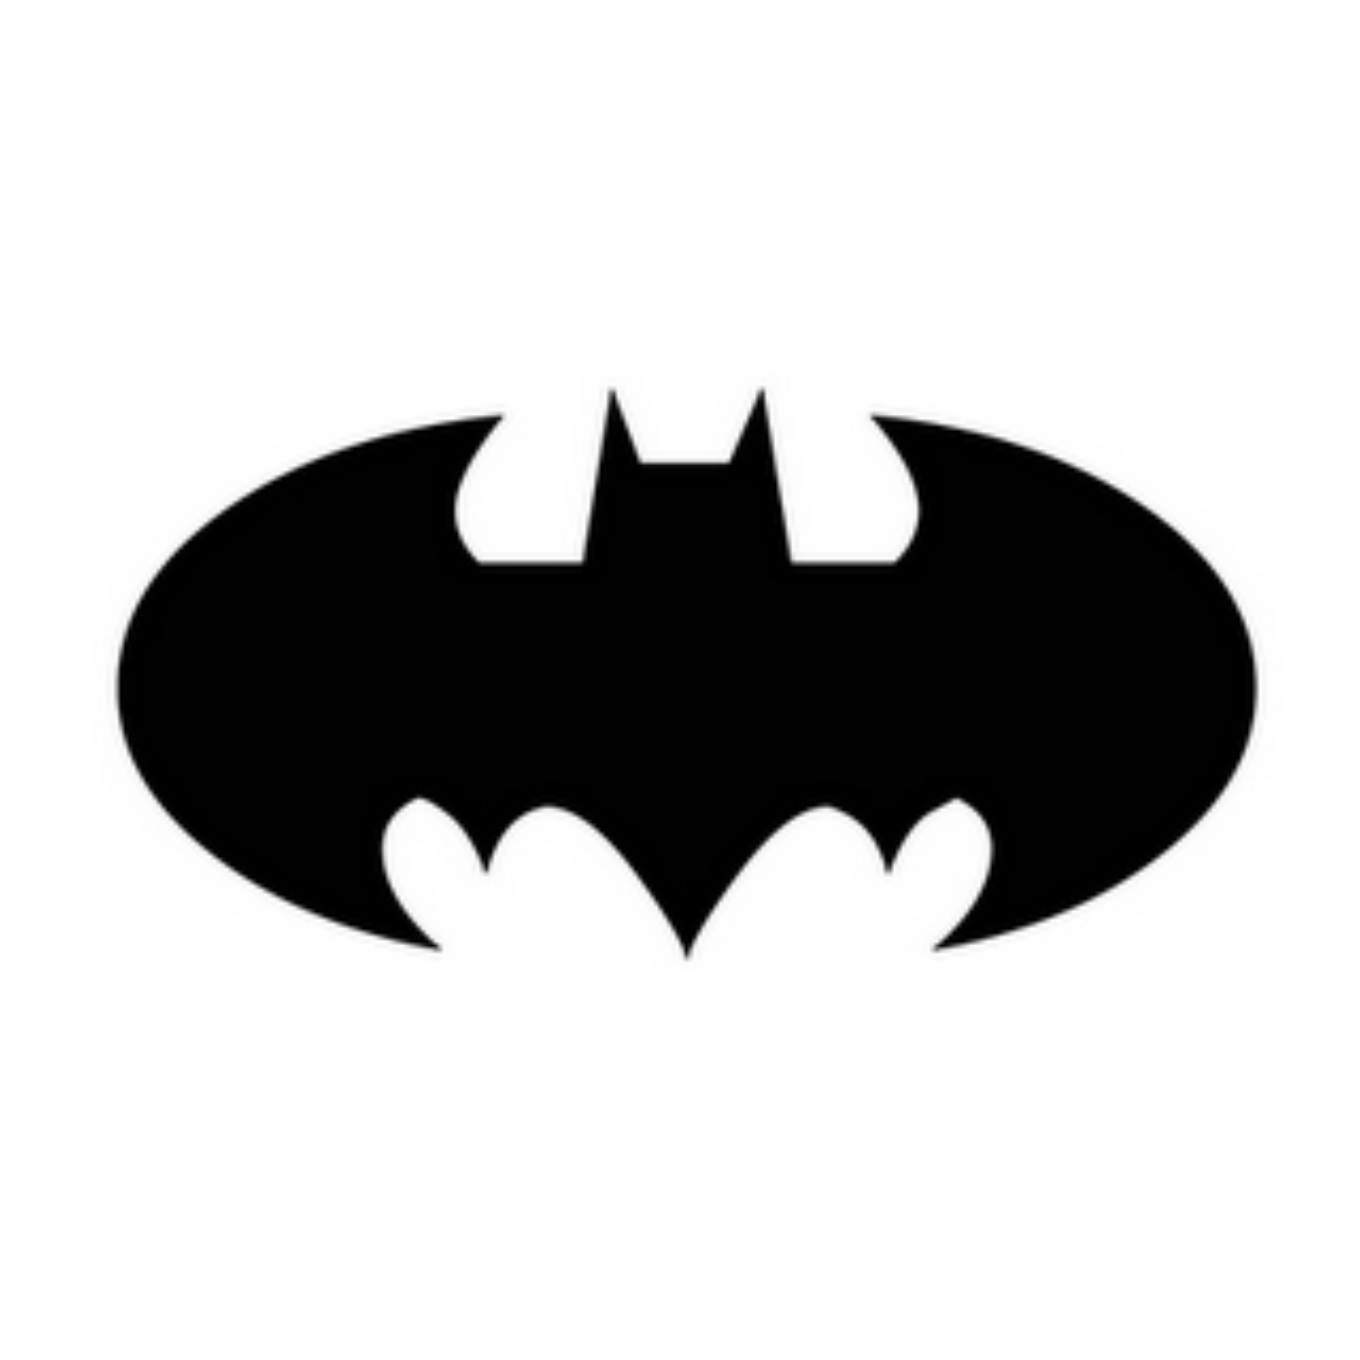 Bat user. Летучая мышь Бэтмен. Знак Бэтмена. Трафарет Бэтмена. Символ Бэтмена.